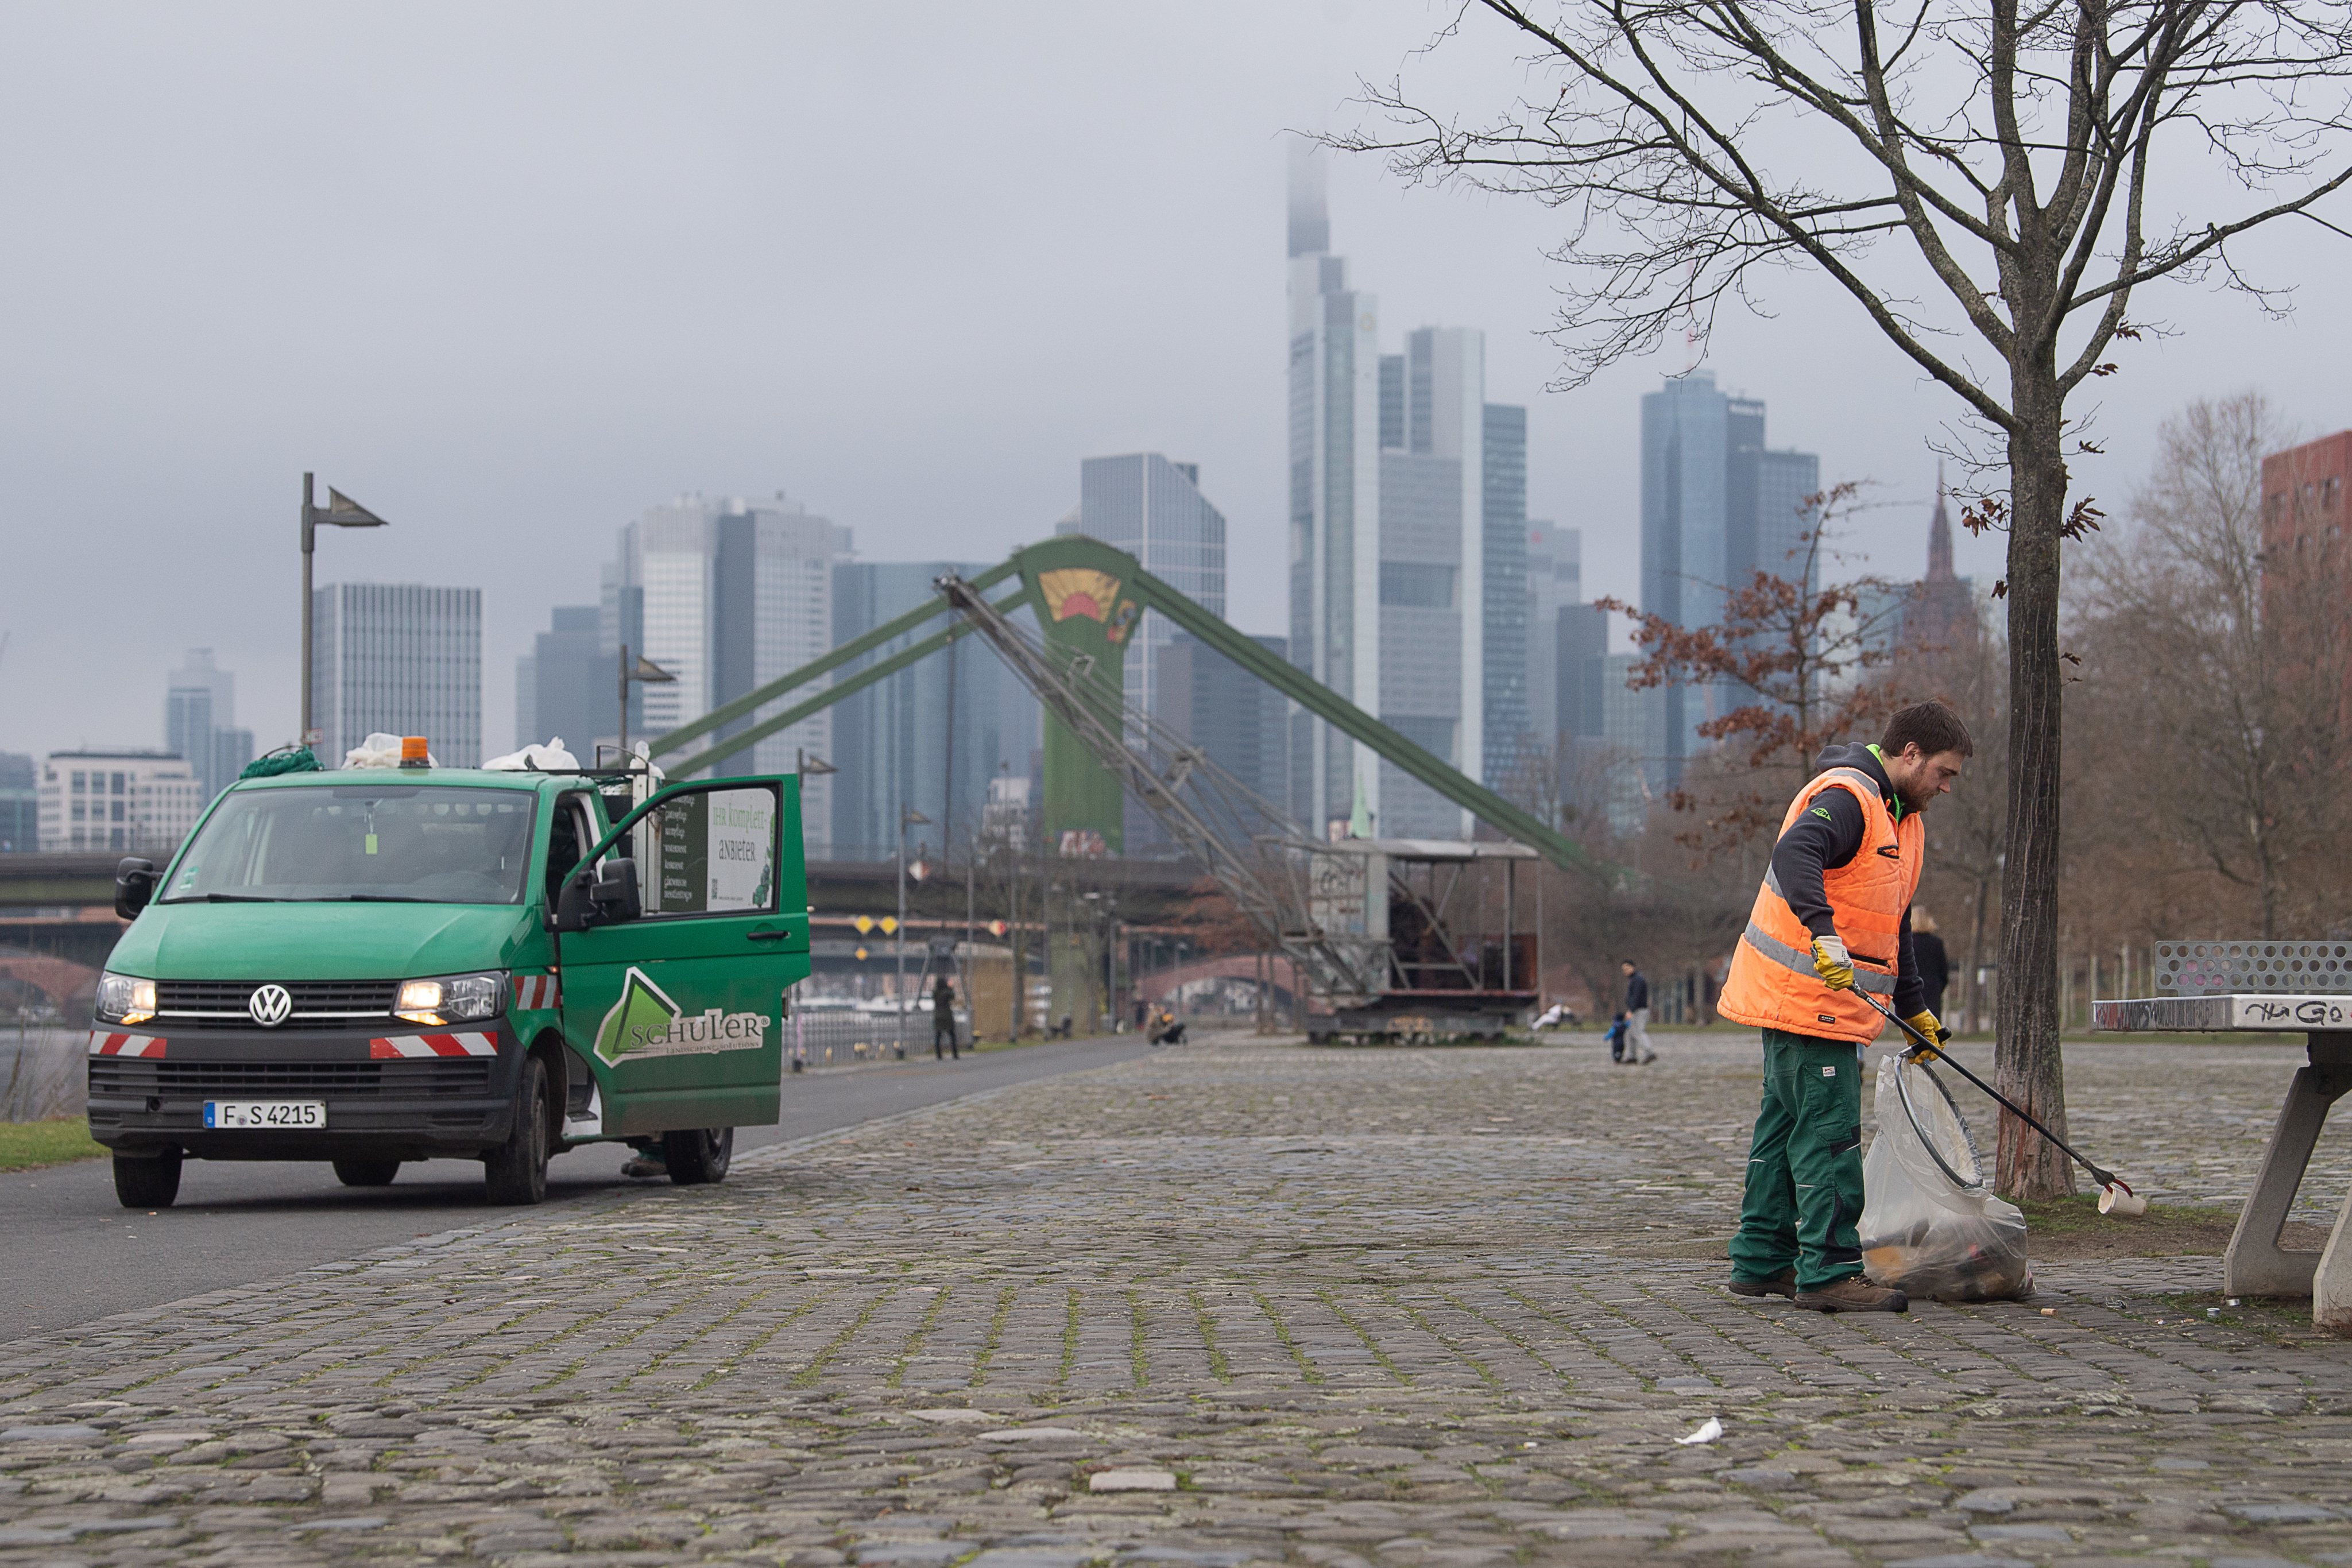 Limpeza das ruas de Frankfurt na Alemanha, no dia 1 de janeiro, depois da Passagem de Ano